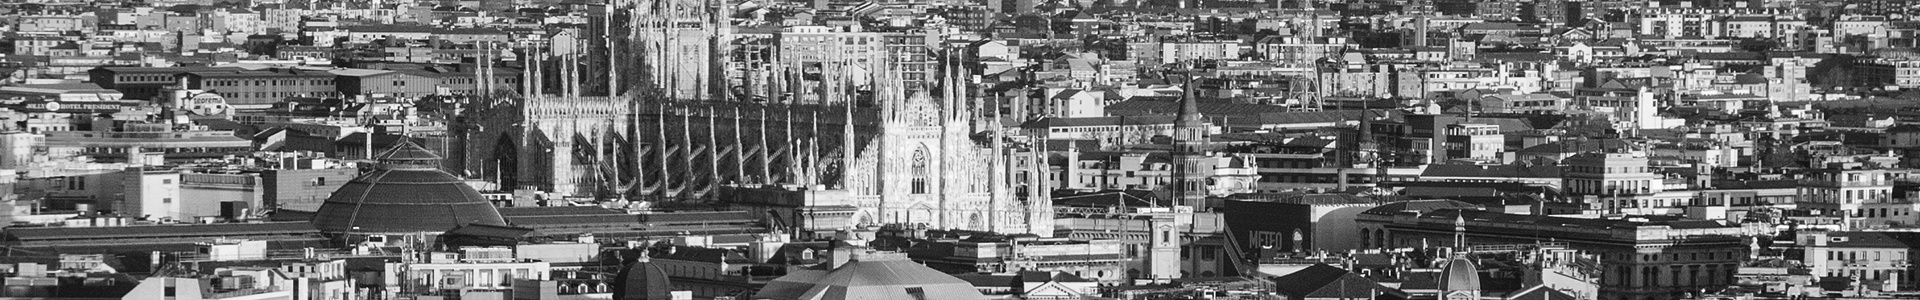 Vista panorámica de Milán en blanco y negro